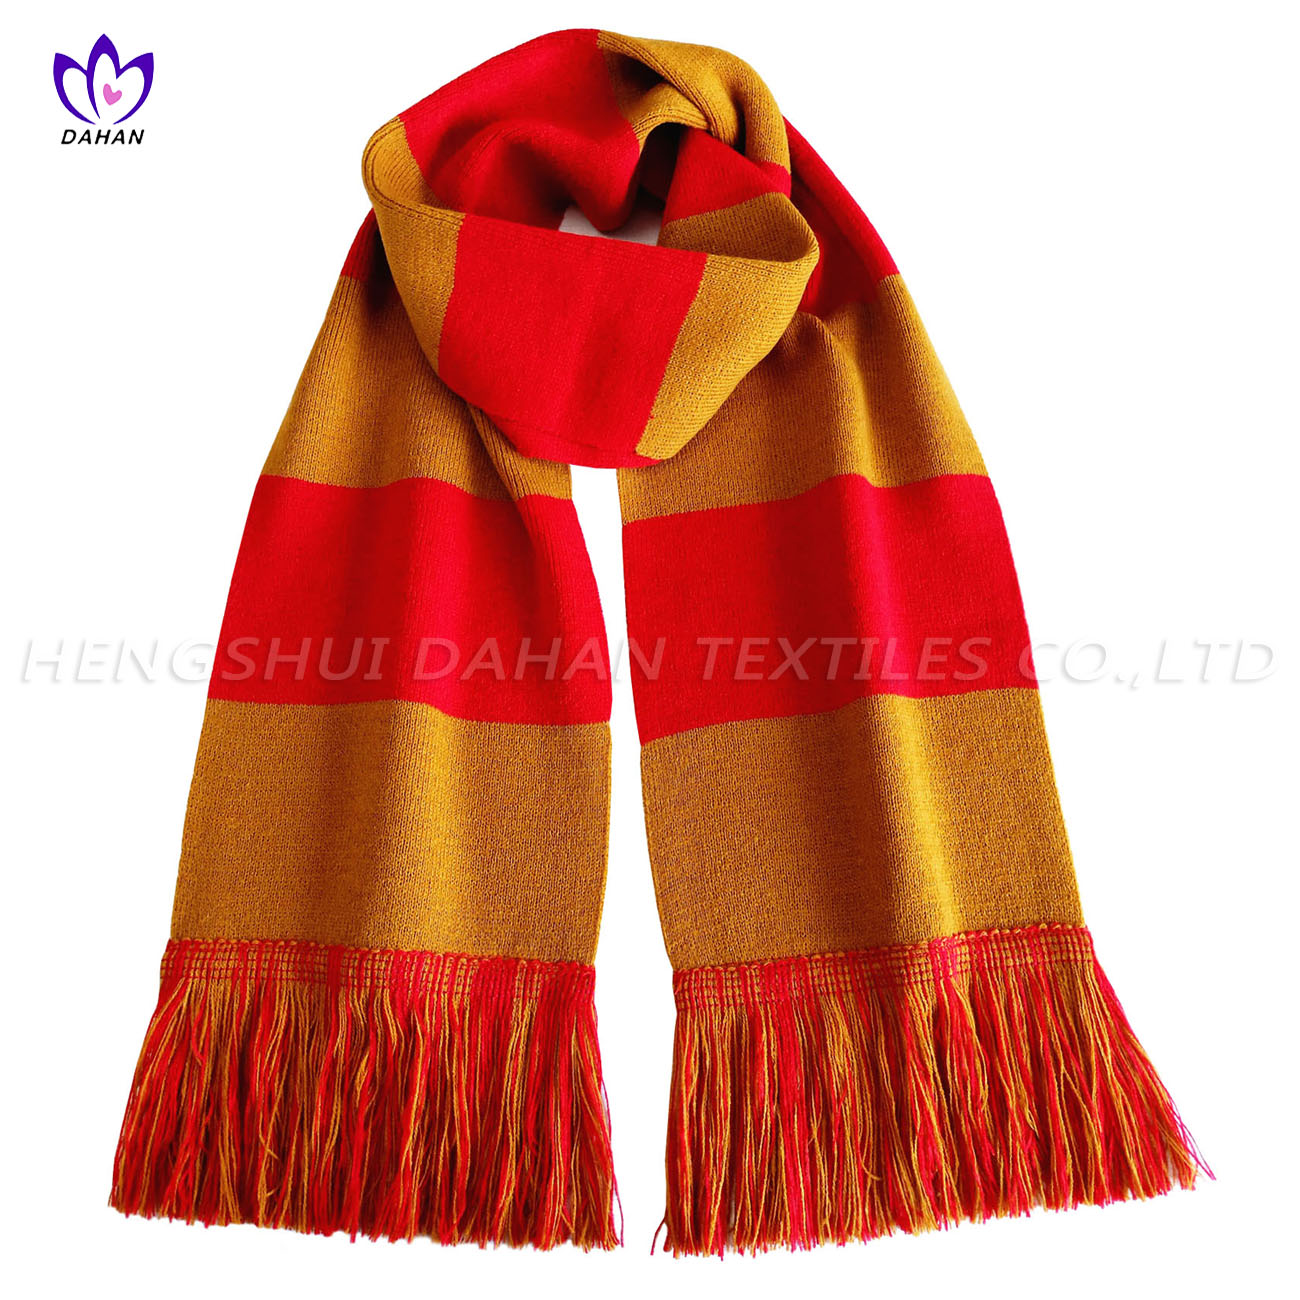 BK31 Yarn-dyed acrylic fibers sports scarf. 